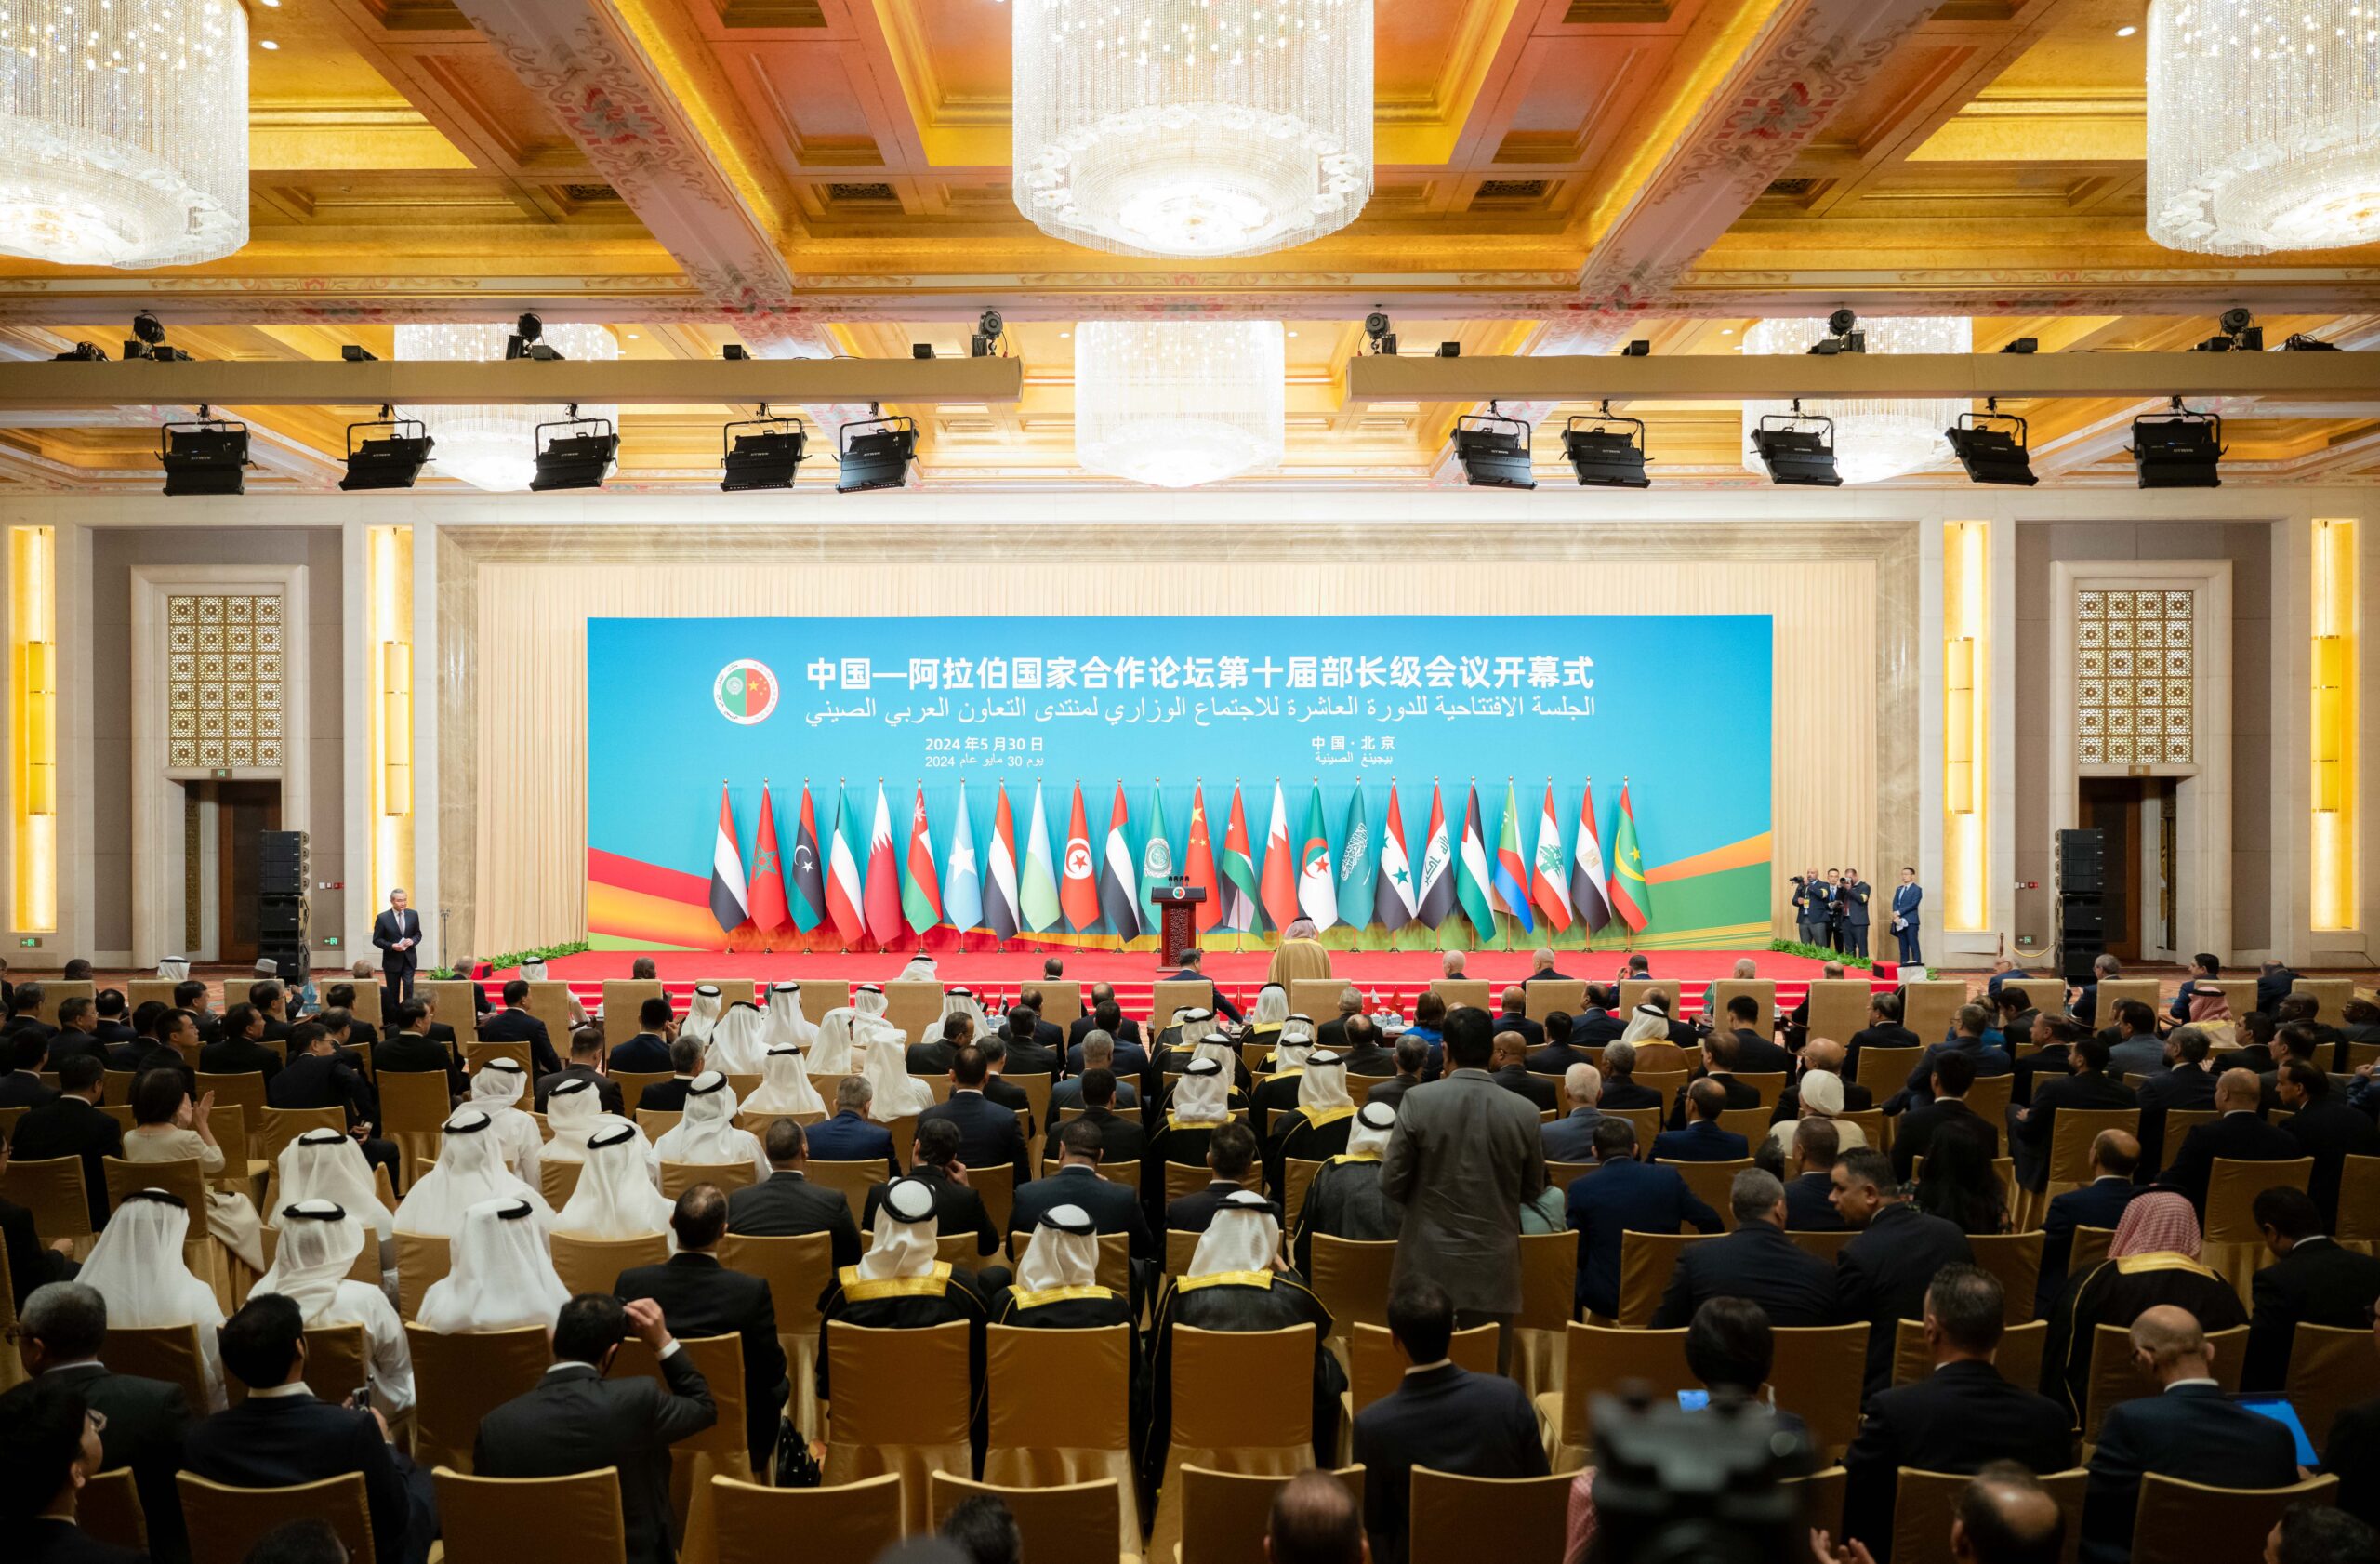 พิธีเปิดการประชุมระดับรัฐมนตรี ครั้งที่ 10 ของการประชุมความร่วมมือจีน-อาหรับ